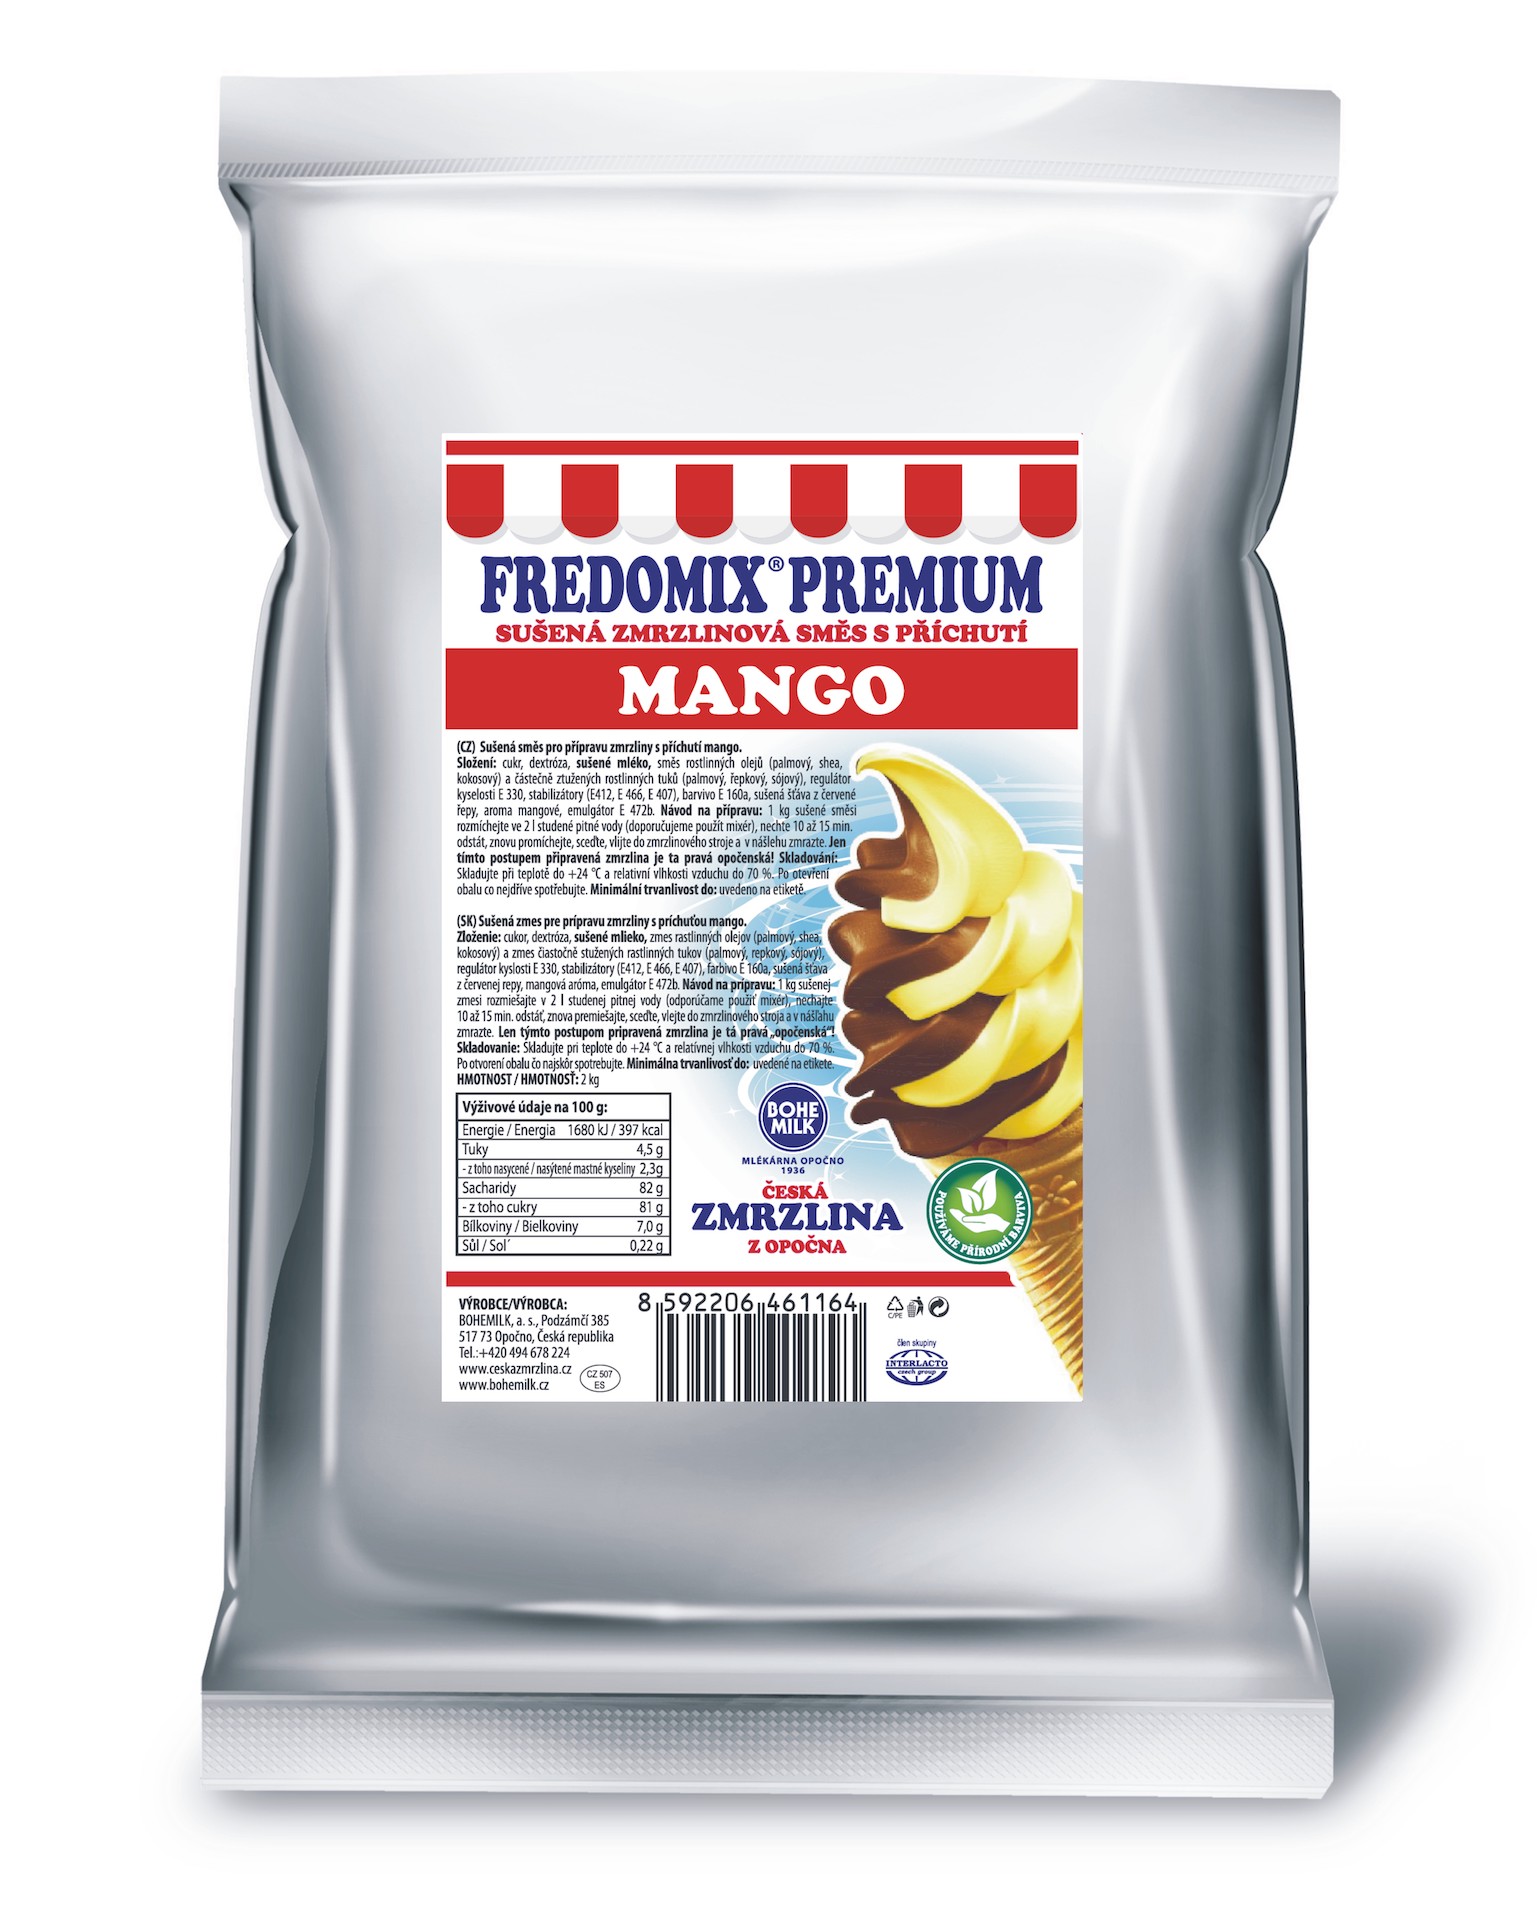 FREDOMIX PREMIUM Mango, 2kg